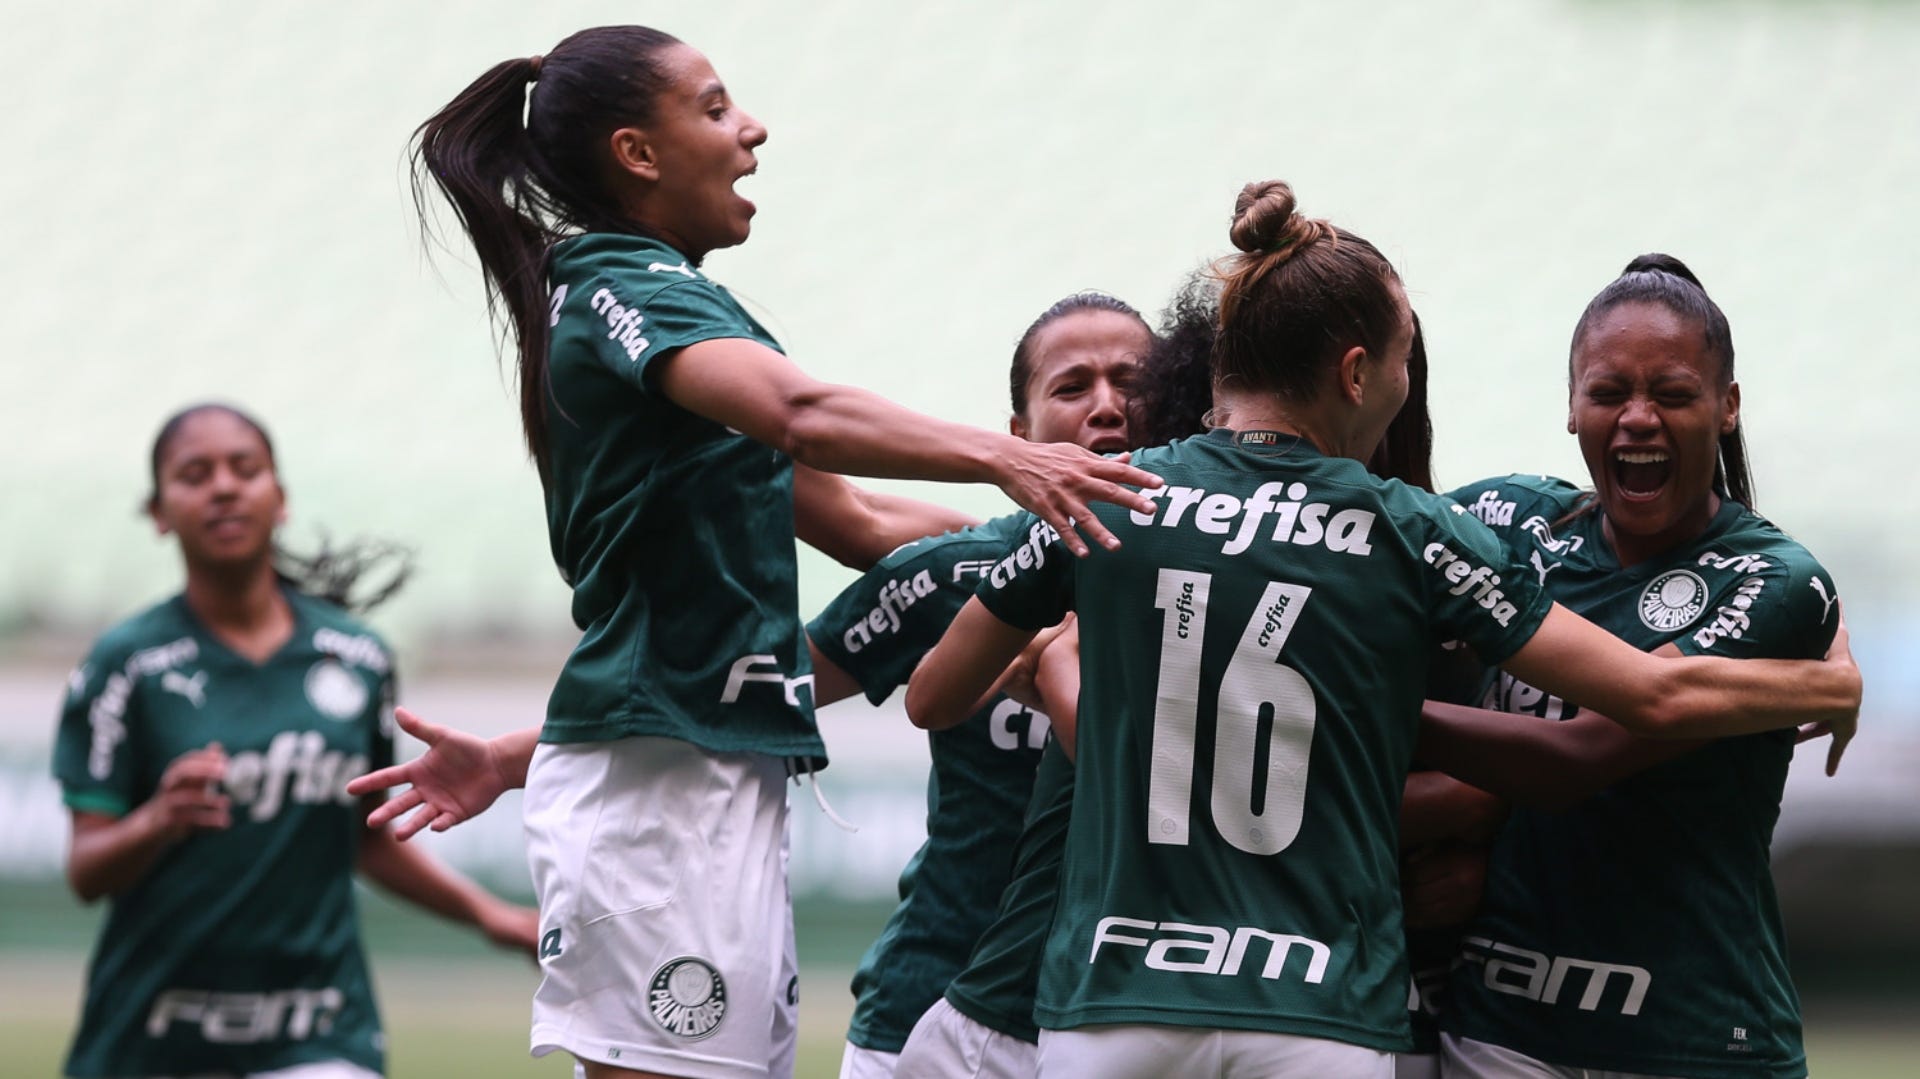 Em que canal passa o jogo do Grêmio feminino?